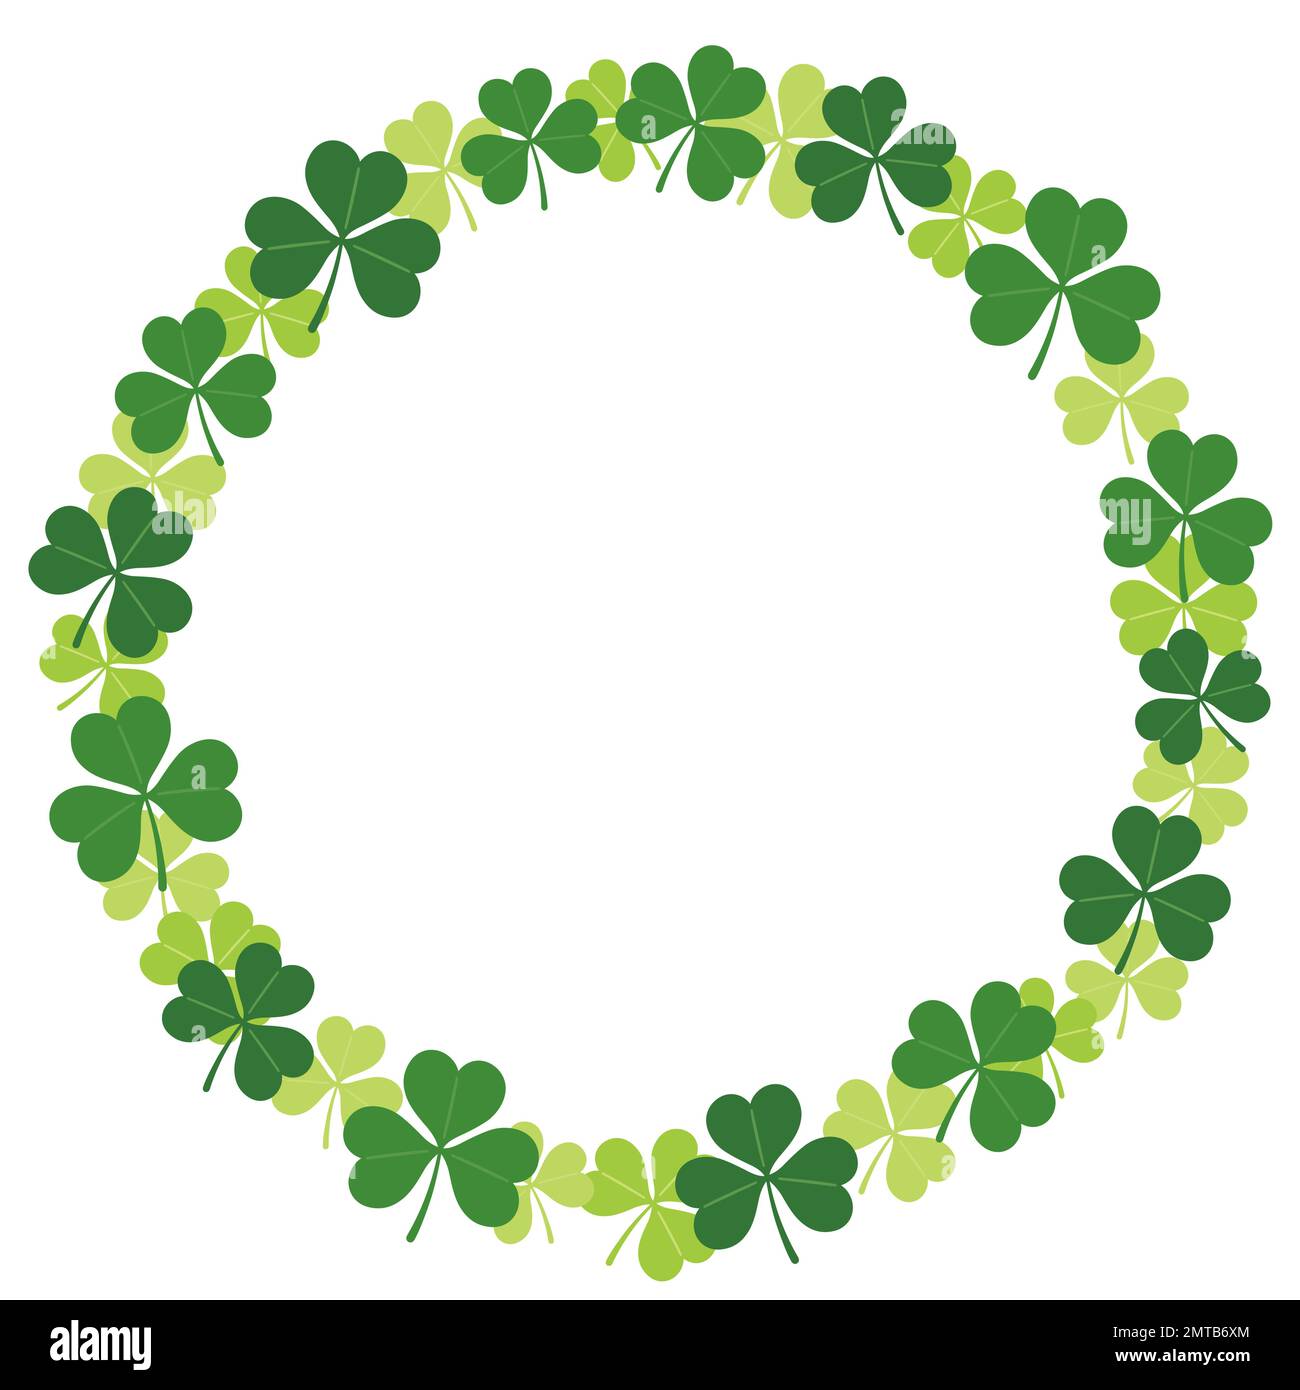 Abbildung Des Runden Rahmens Von Vektorklee Für St. Patrick's Day, isoliert auf weißem Hintergrund. Stock Vektor